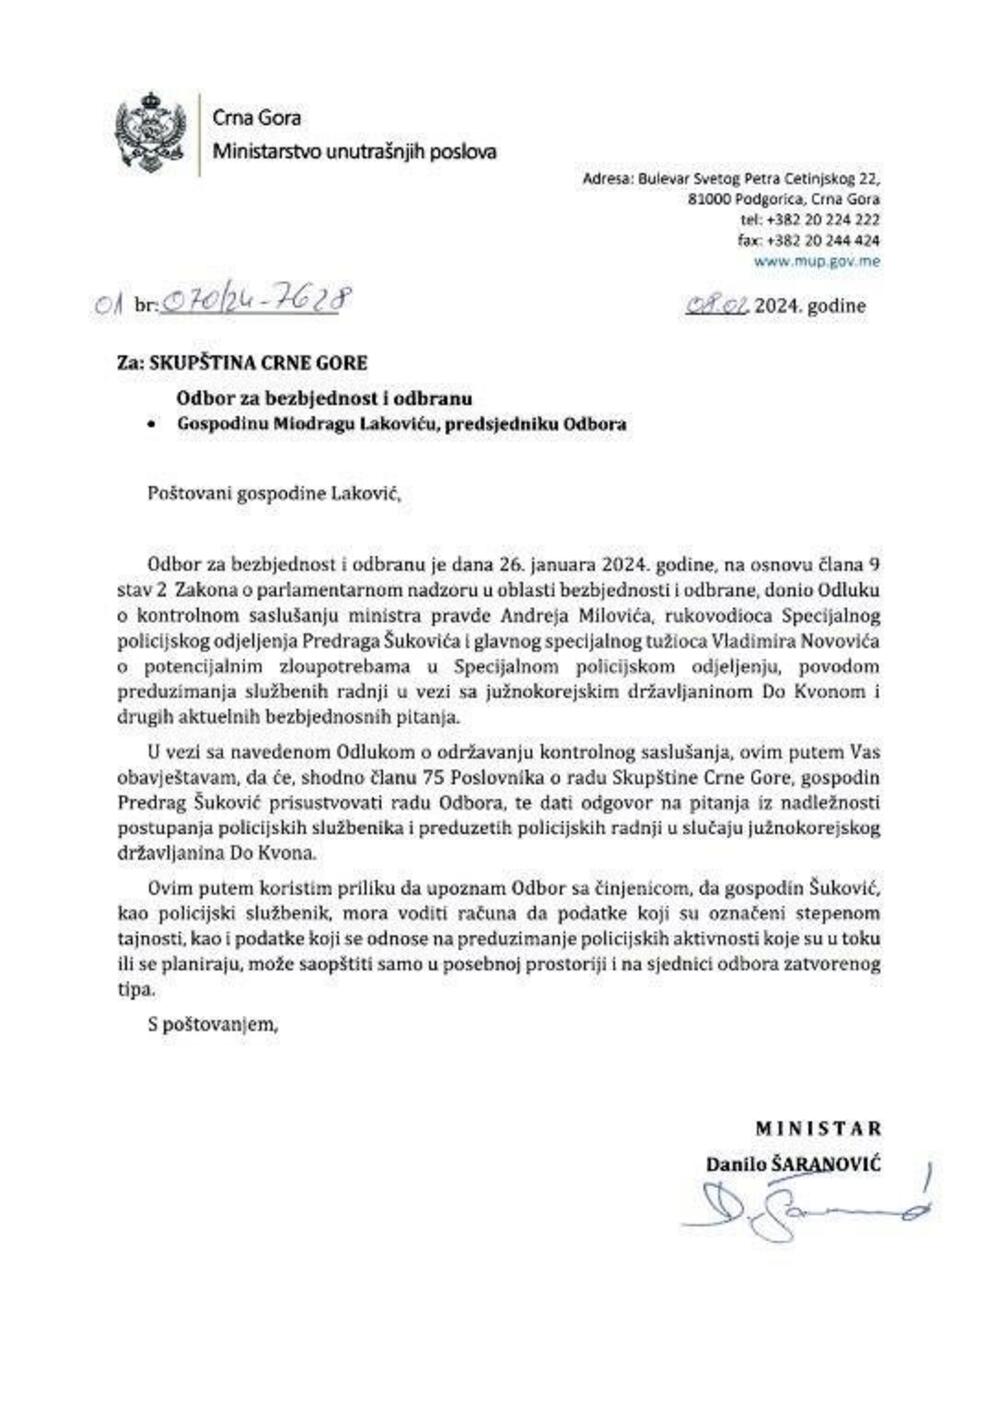 Šaranović dopis